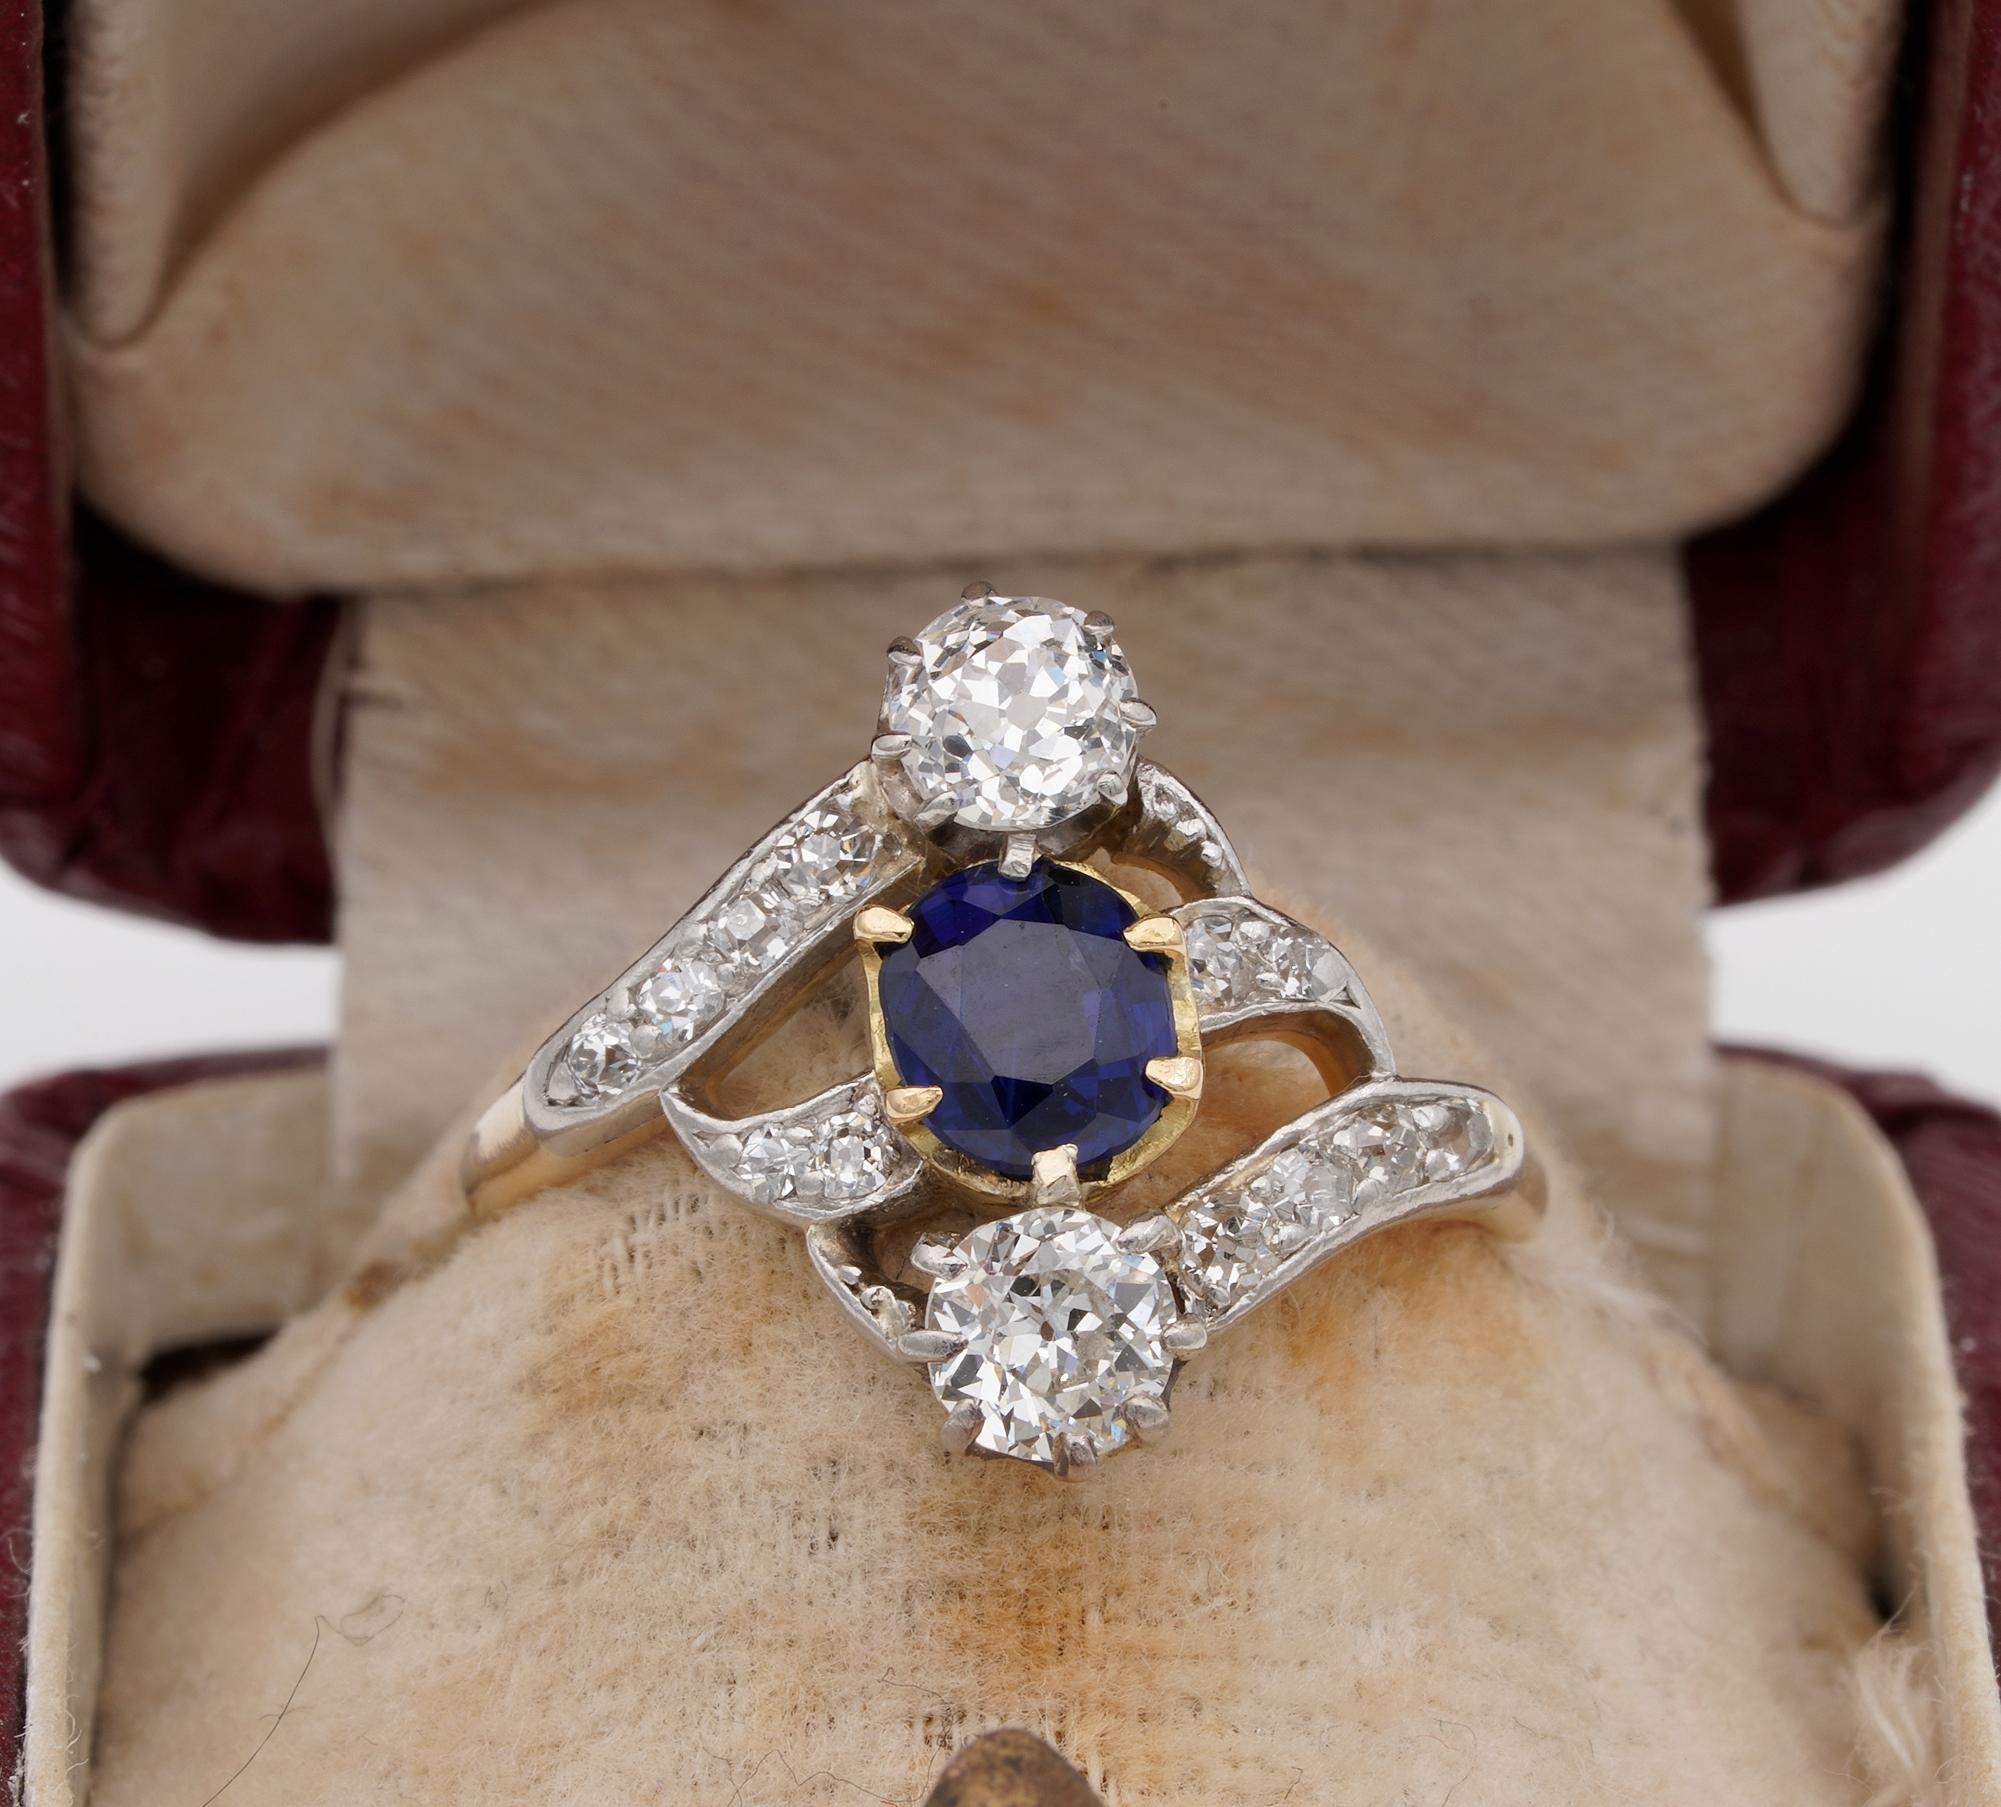 Attraktiver Ring mit Diamanten und Saphiren aus der Jugendstilzeit, ca. 1900
Handgefertigt aus massivem Platin und 18 KT Gold, unmarkiert
Exquisites Beispiel für die ewige Eleganz, das die elegante Mode jener Zeit in vollem Umfang zum Ausdruck